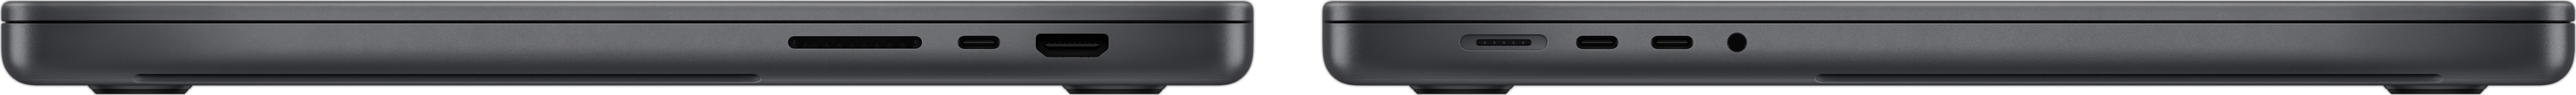 Widok z boku na MacBooka Pro przedstawiający gniazdo na kartę SDXC, trzy porty Thunderbolt 4, port HDMI, port MagSafe 3 do ładowania i gniazdo słuchawkowe.